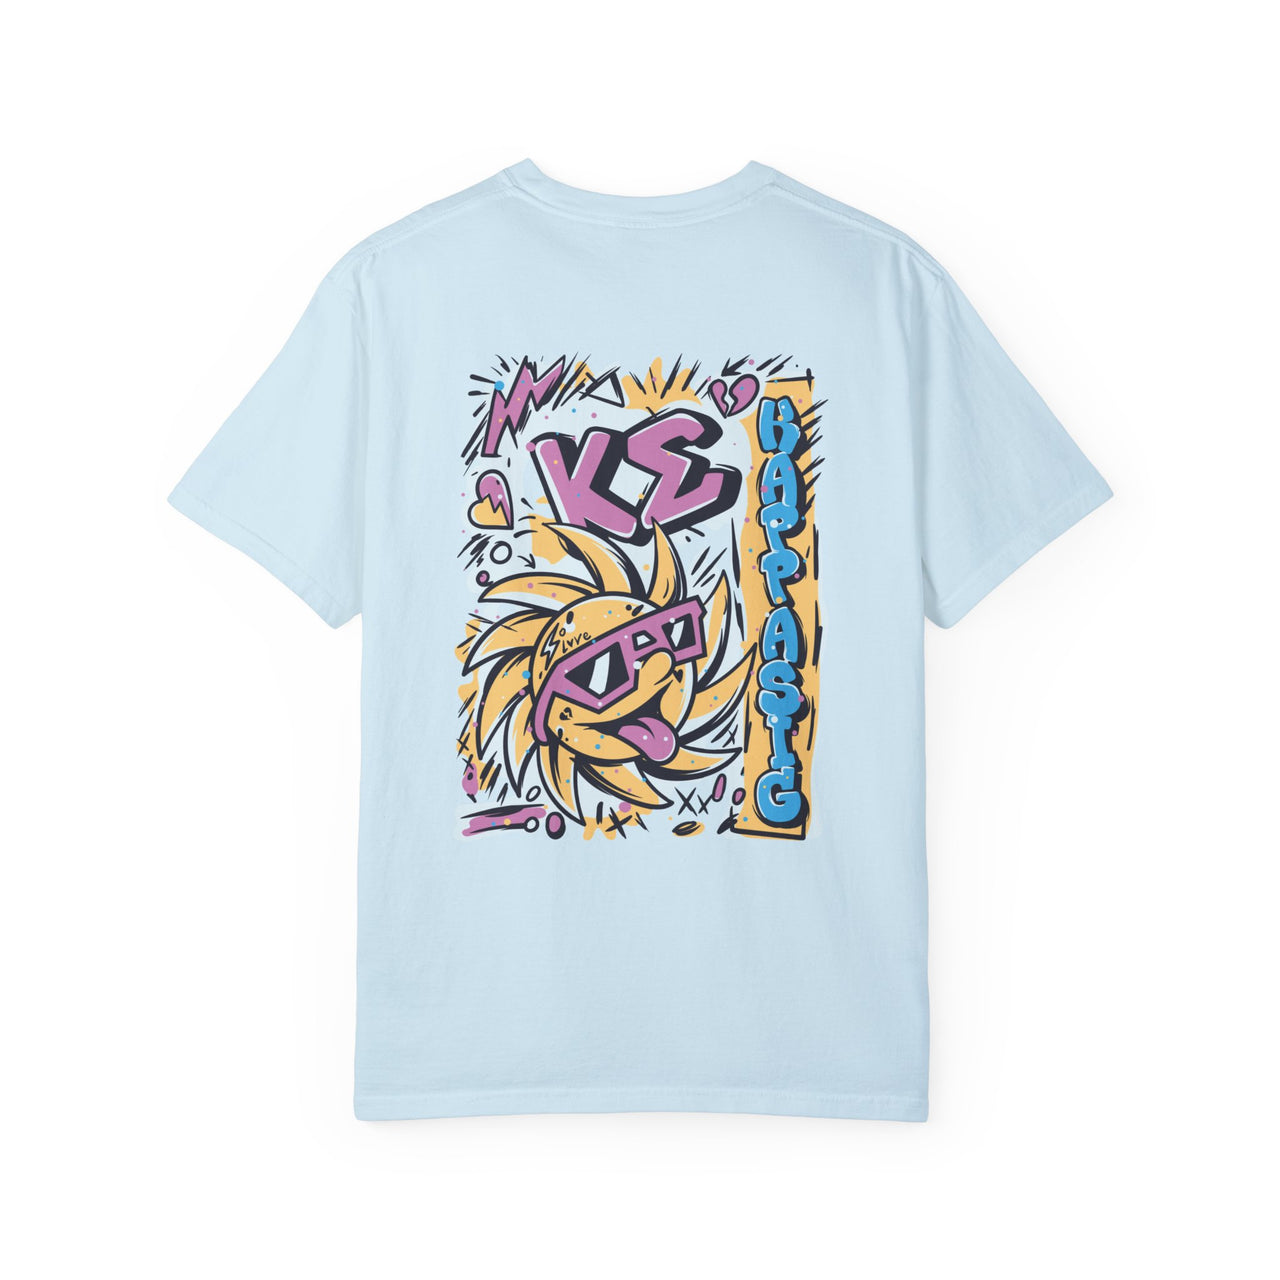 Kappa Sigma Graphic T-Shirt | Fun in the Sun